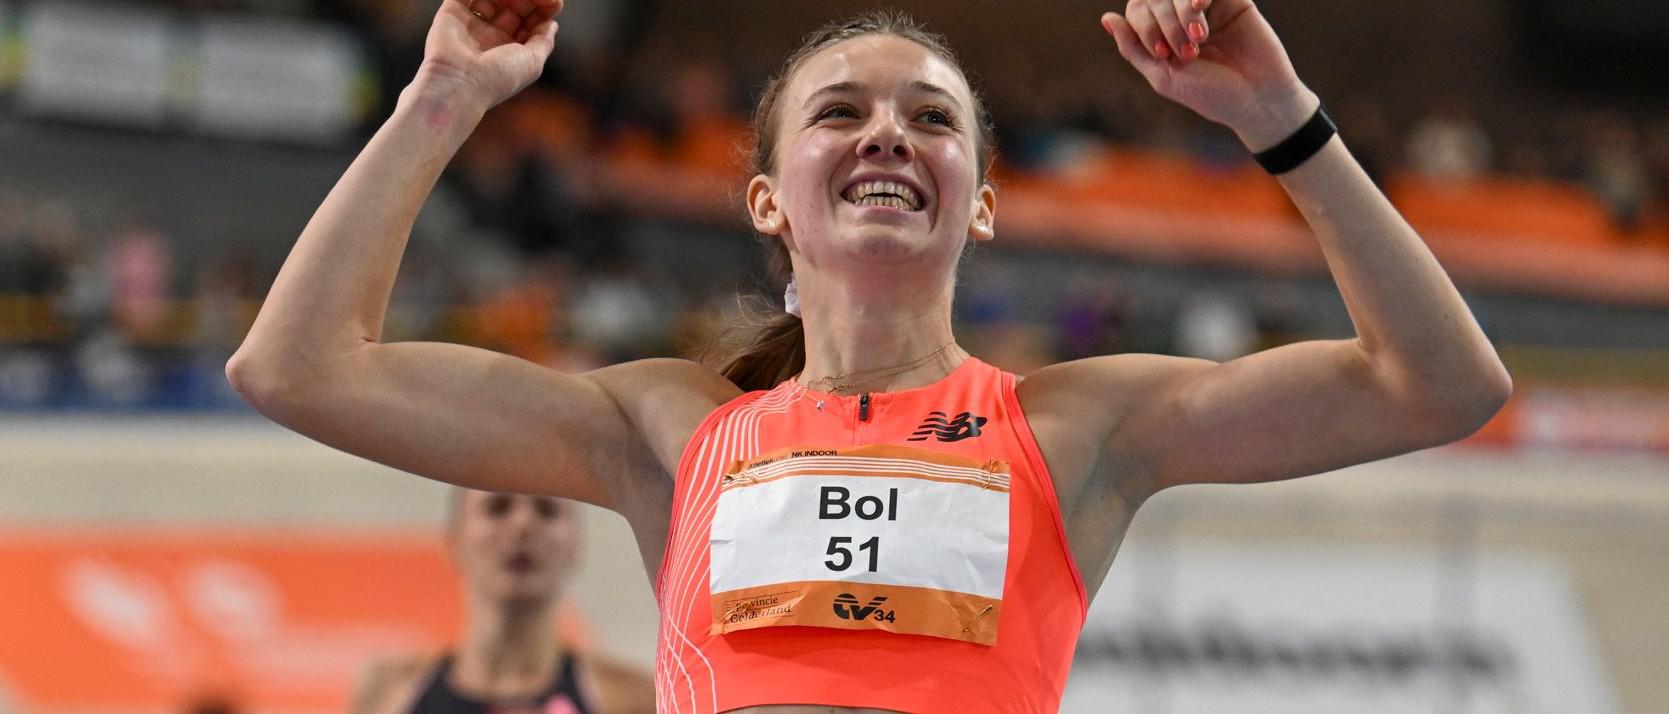 荷兰名将波尔刷新女子400米室内世界纪录(1)